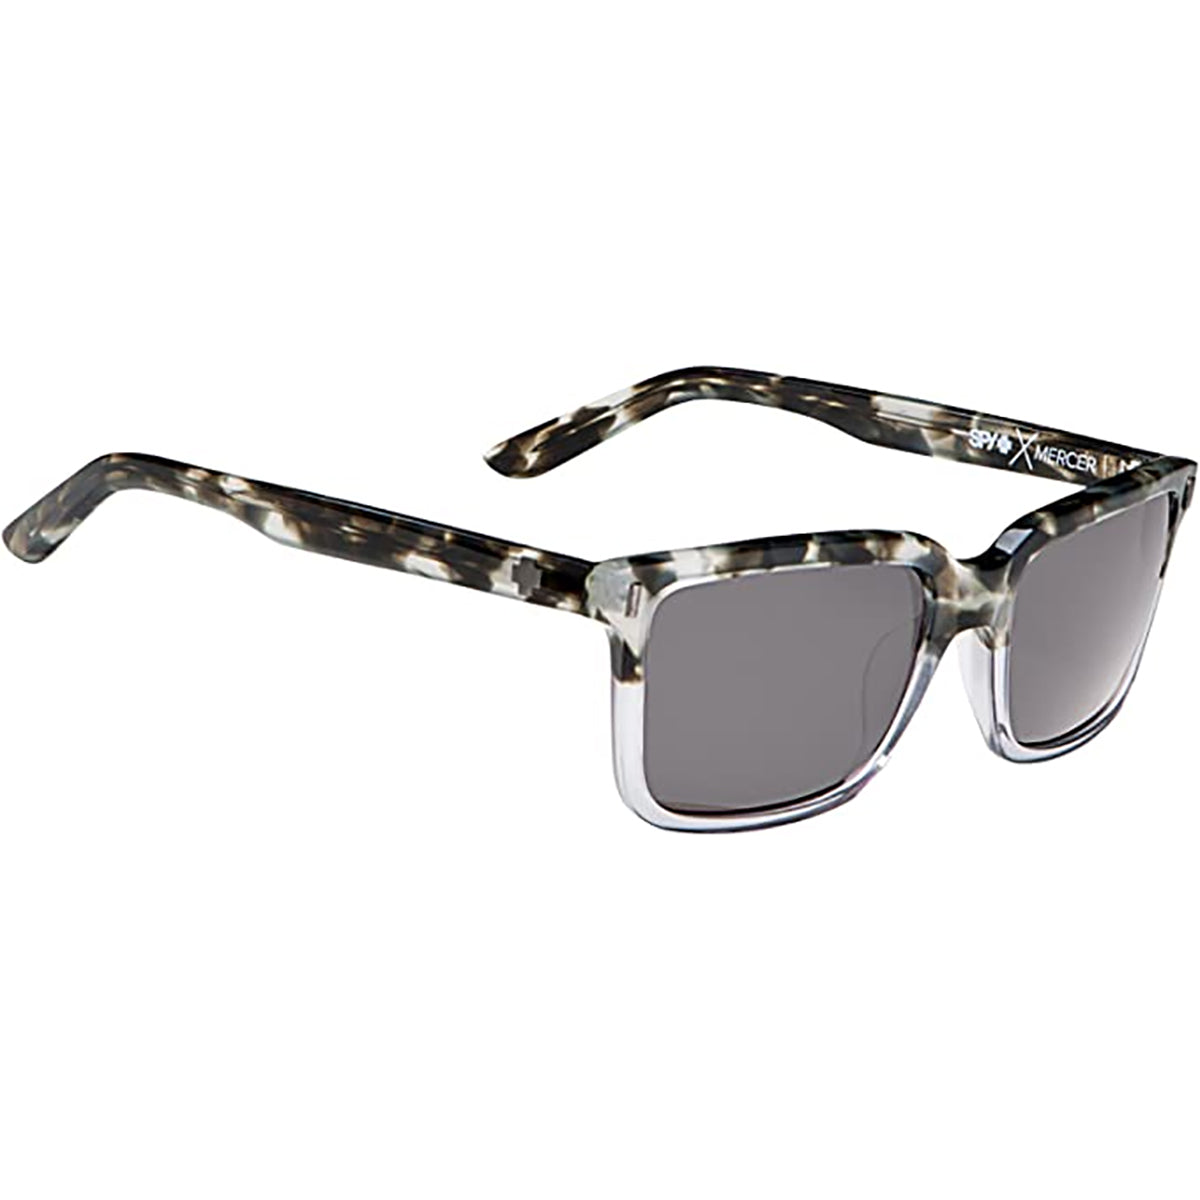 Spy Mercer Adult Lifestyle Sunglasses-673023038133